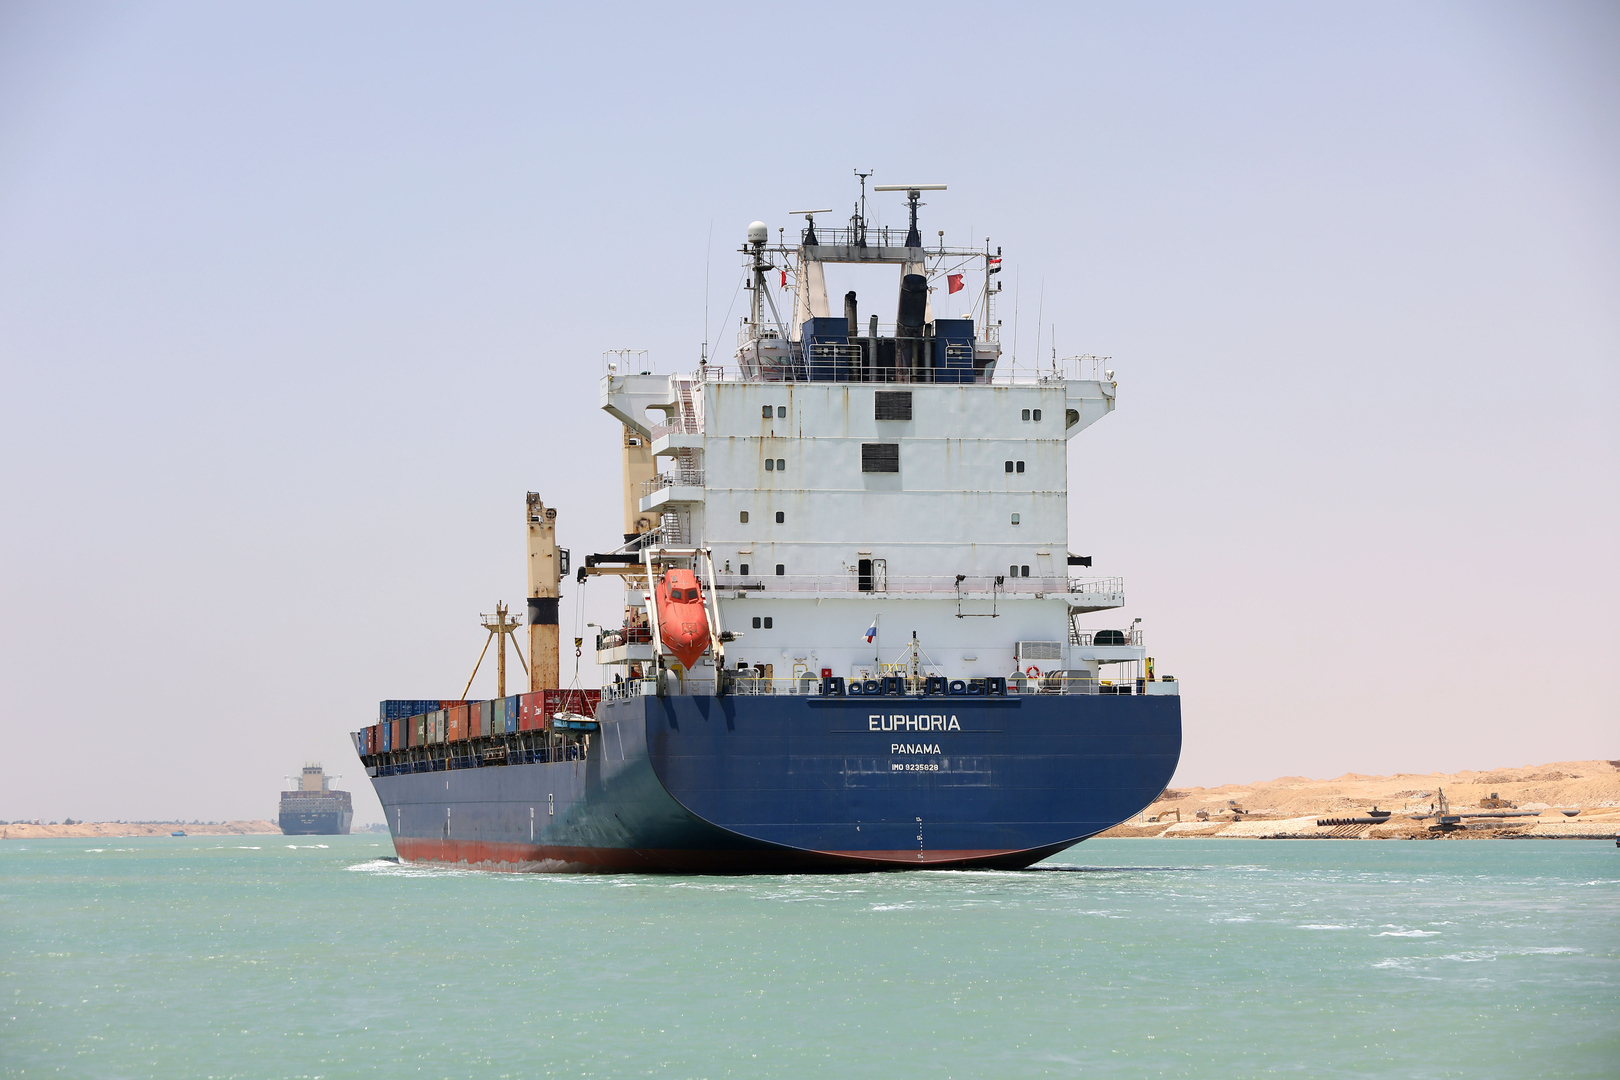 قد ينافس الموانئ الإسرائيلية.. تل أبيب تترقب خط النقل البحري بين الأردن ومصر